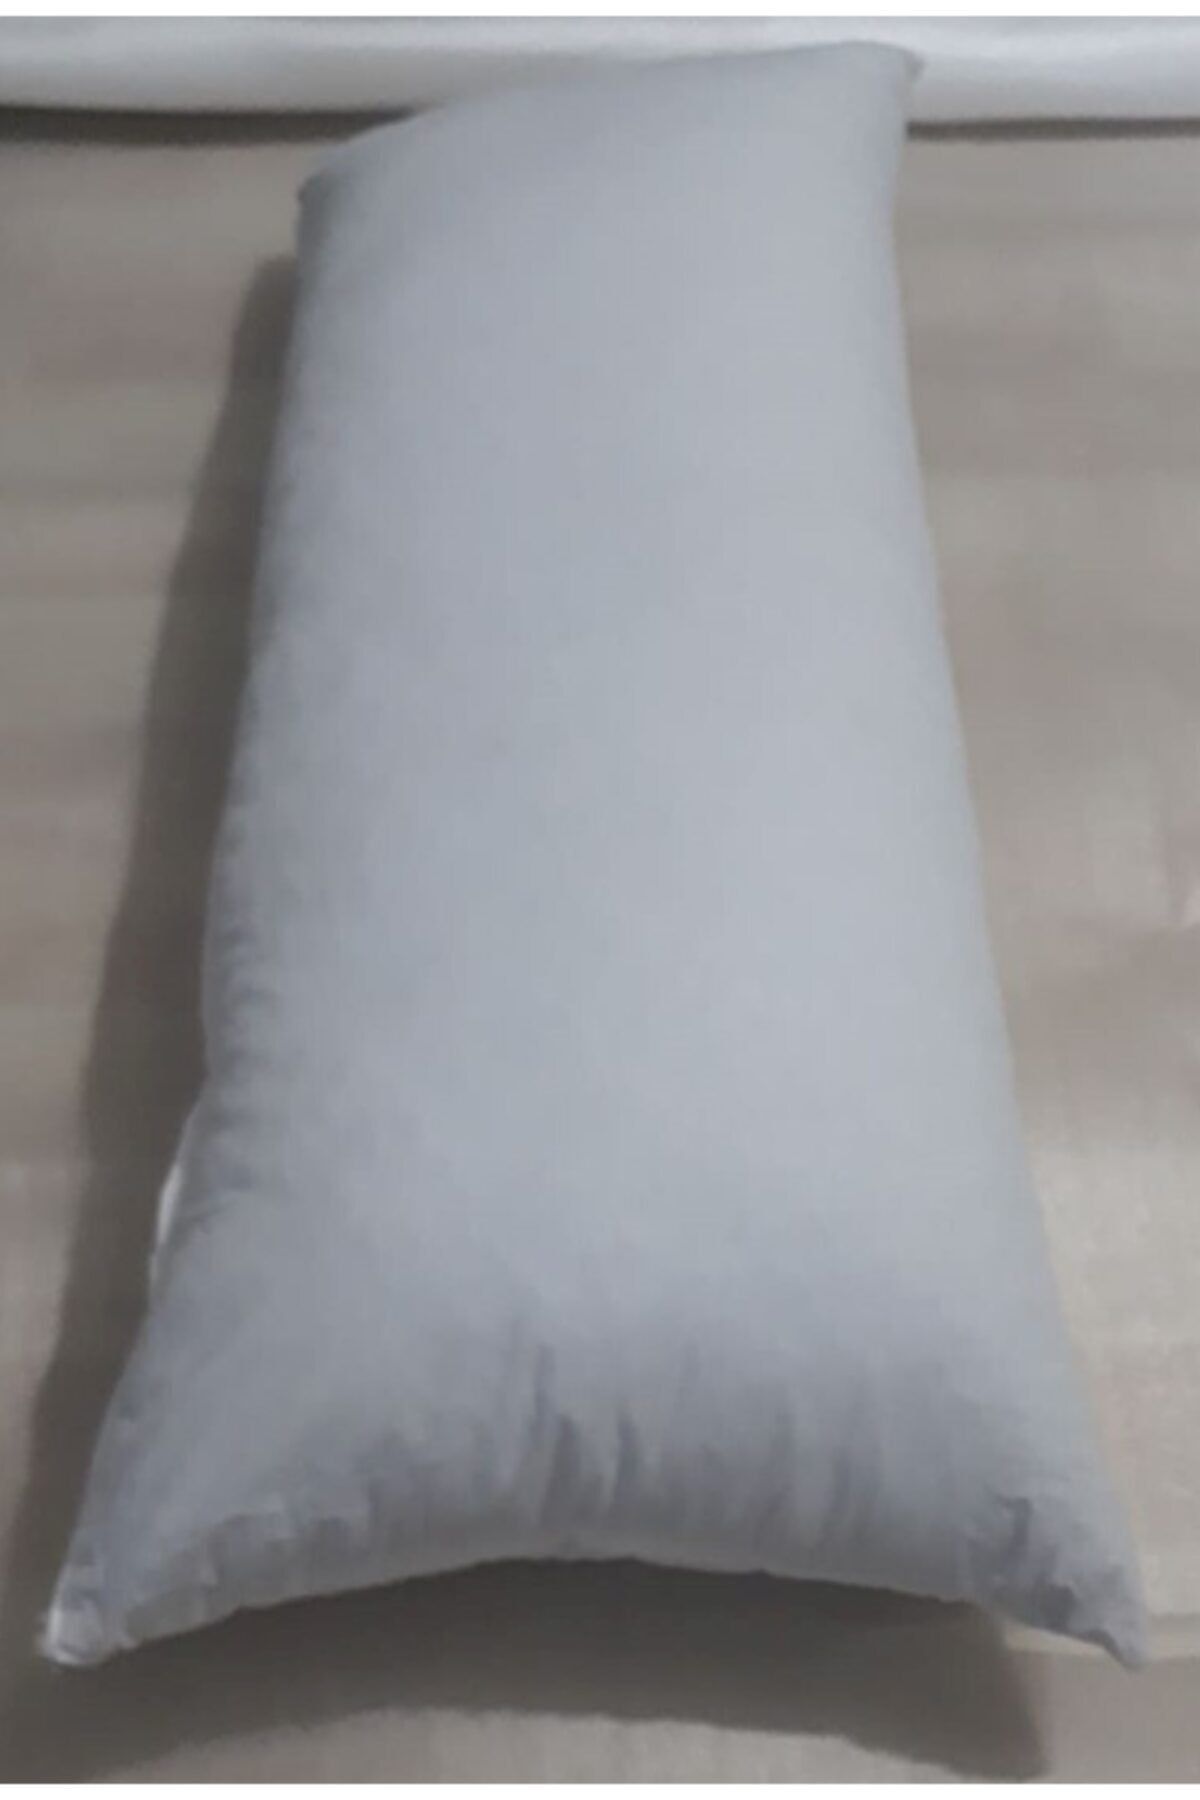 BARERMO Sarılma Yastığı, Bacak Arası Yastığı. 1 Metre Uzunlukta Yastık, Yastık, Uzun Yastık